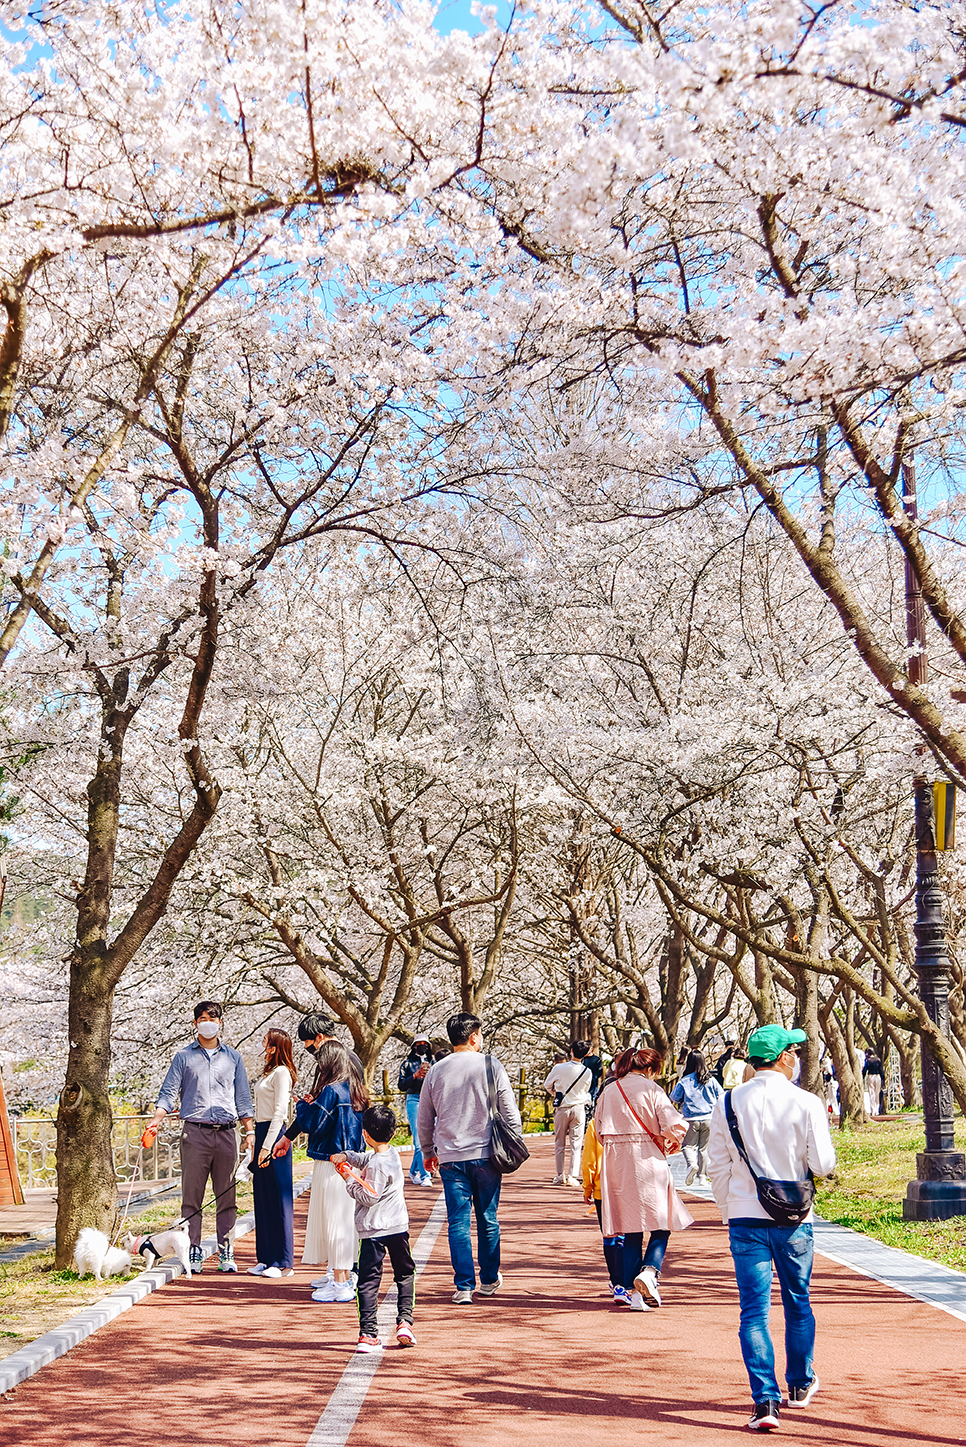 광주 벚꽃 명소 나들이 벚꽃터널 패밀리랜드 우치공원 무료 입장